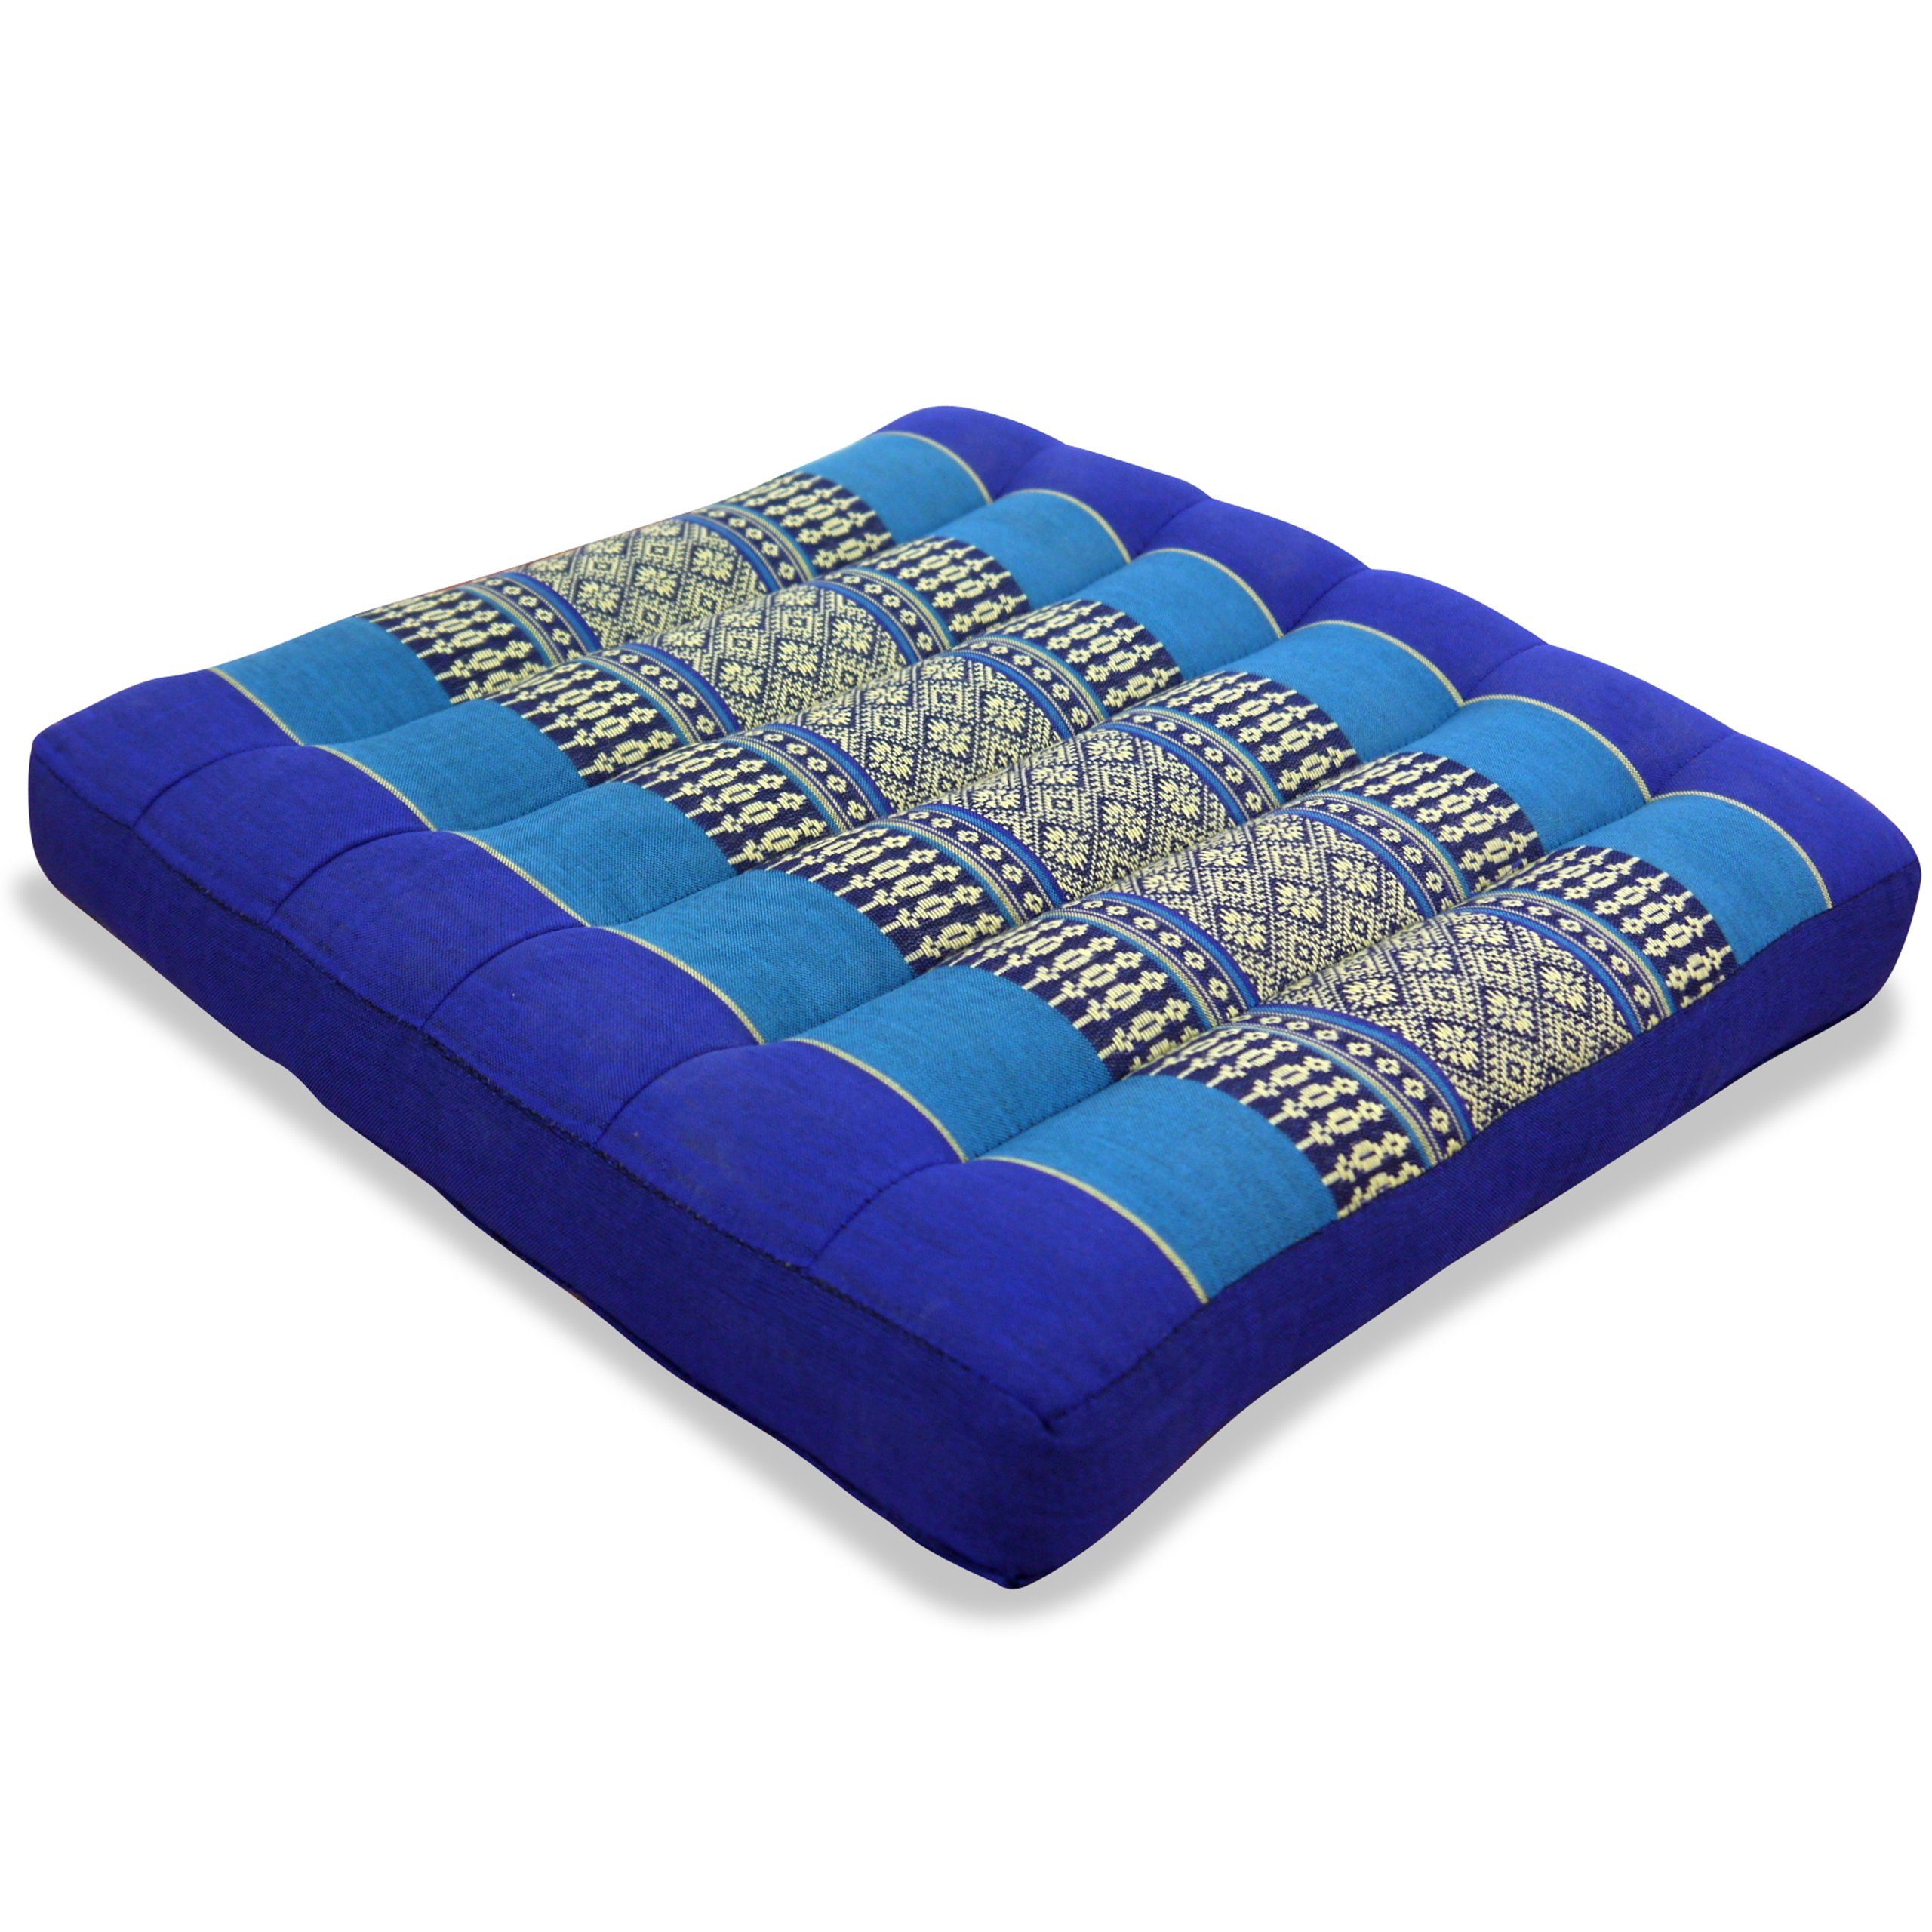 35x35x6cm, livasia und Sitzkissen blau 35 cm, Sitzkissen handgefertigt, vegan Kapok